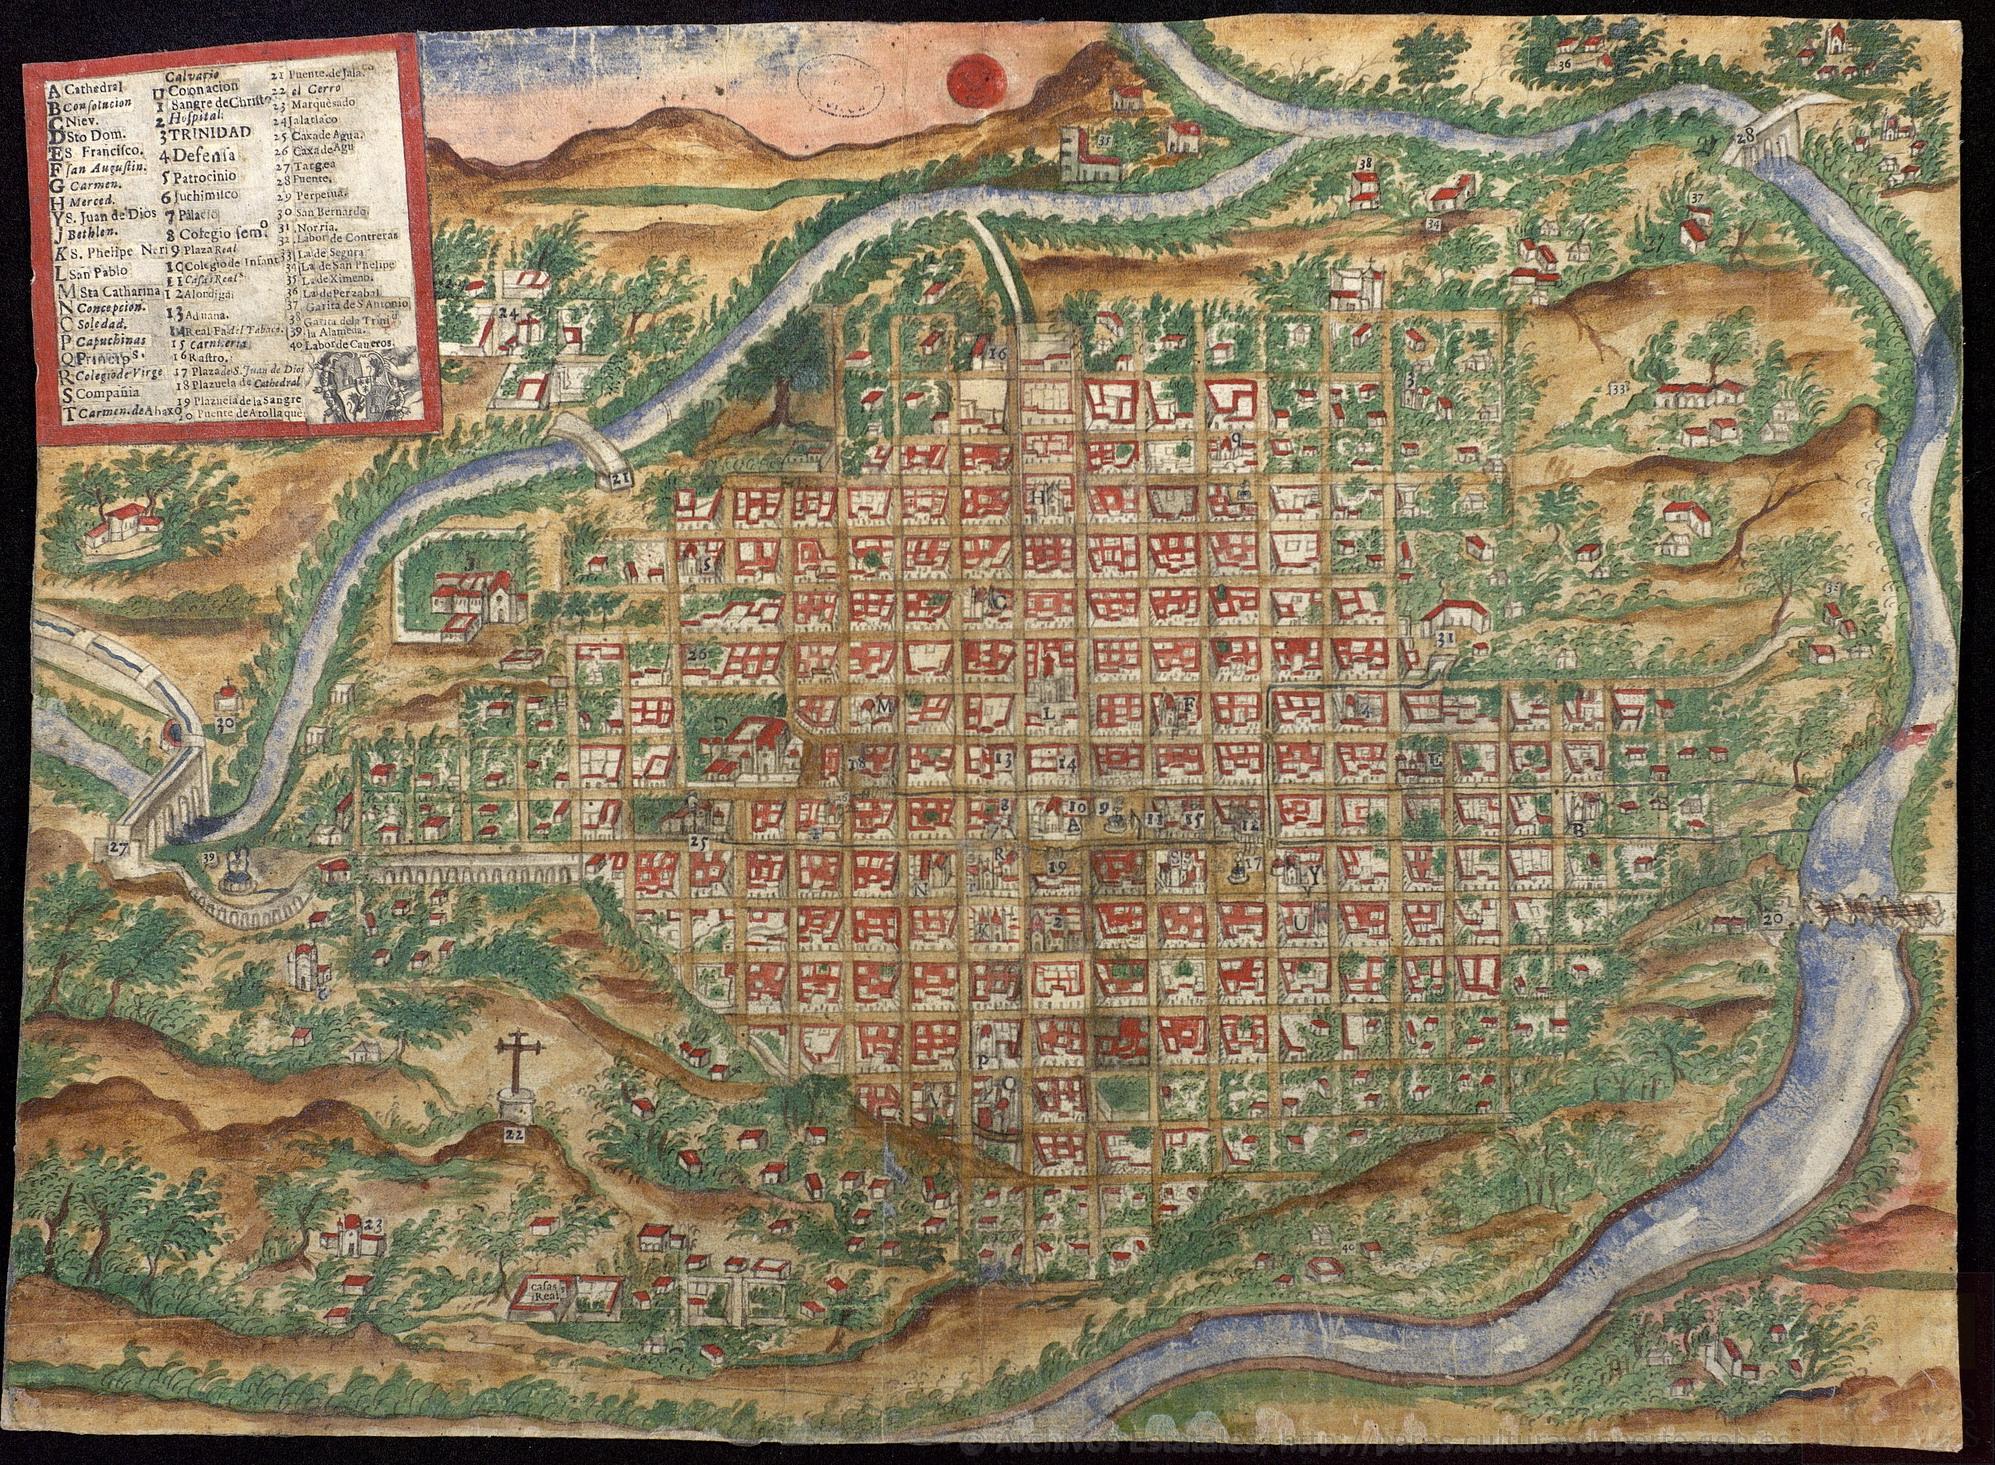 Archivo General de Indias, <i>Plano de la ciudad de Antequera de Oaxaca y sus alrededores</i>. 1777, Manuscrito e impreso, dibujado a plumilla. Digitalizado por PARES, signatura MP-MEXICO,543